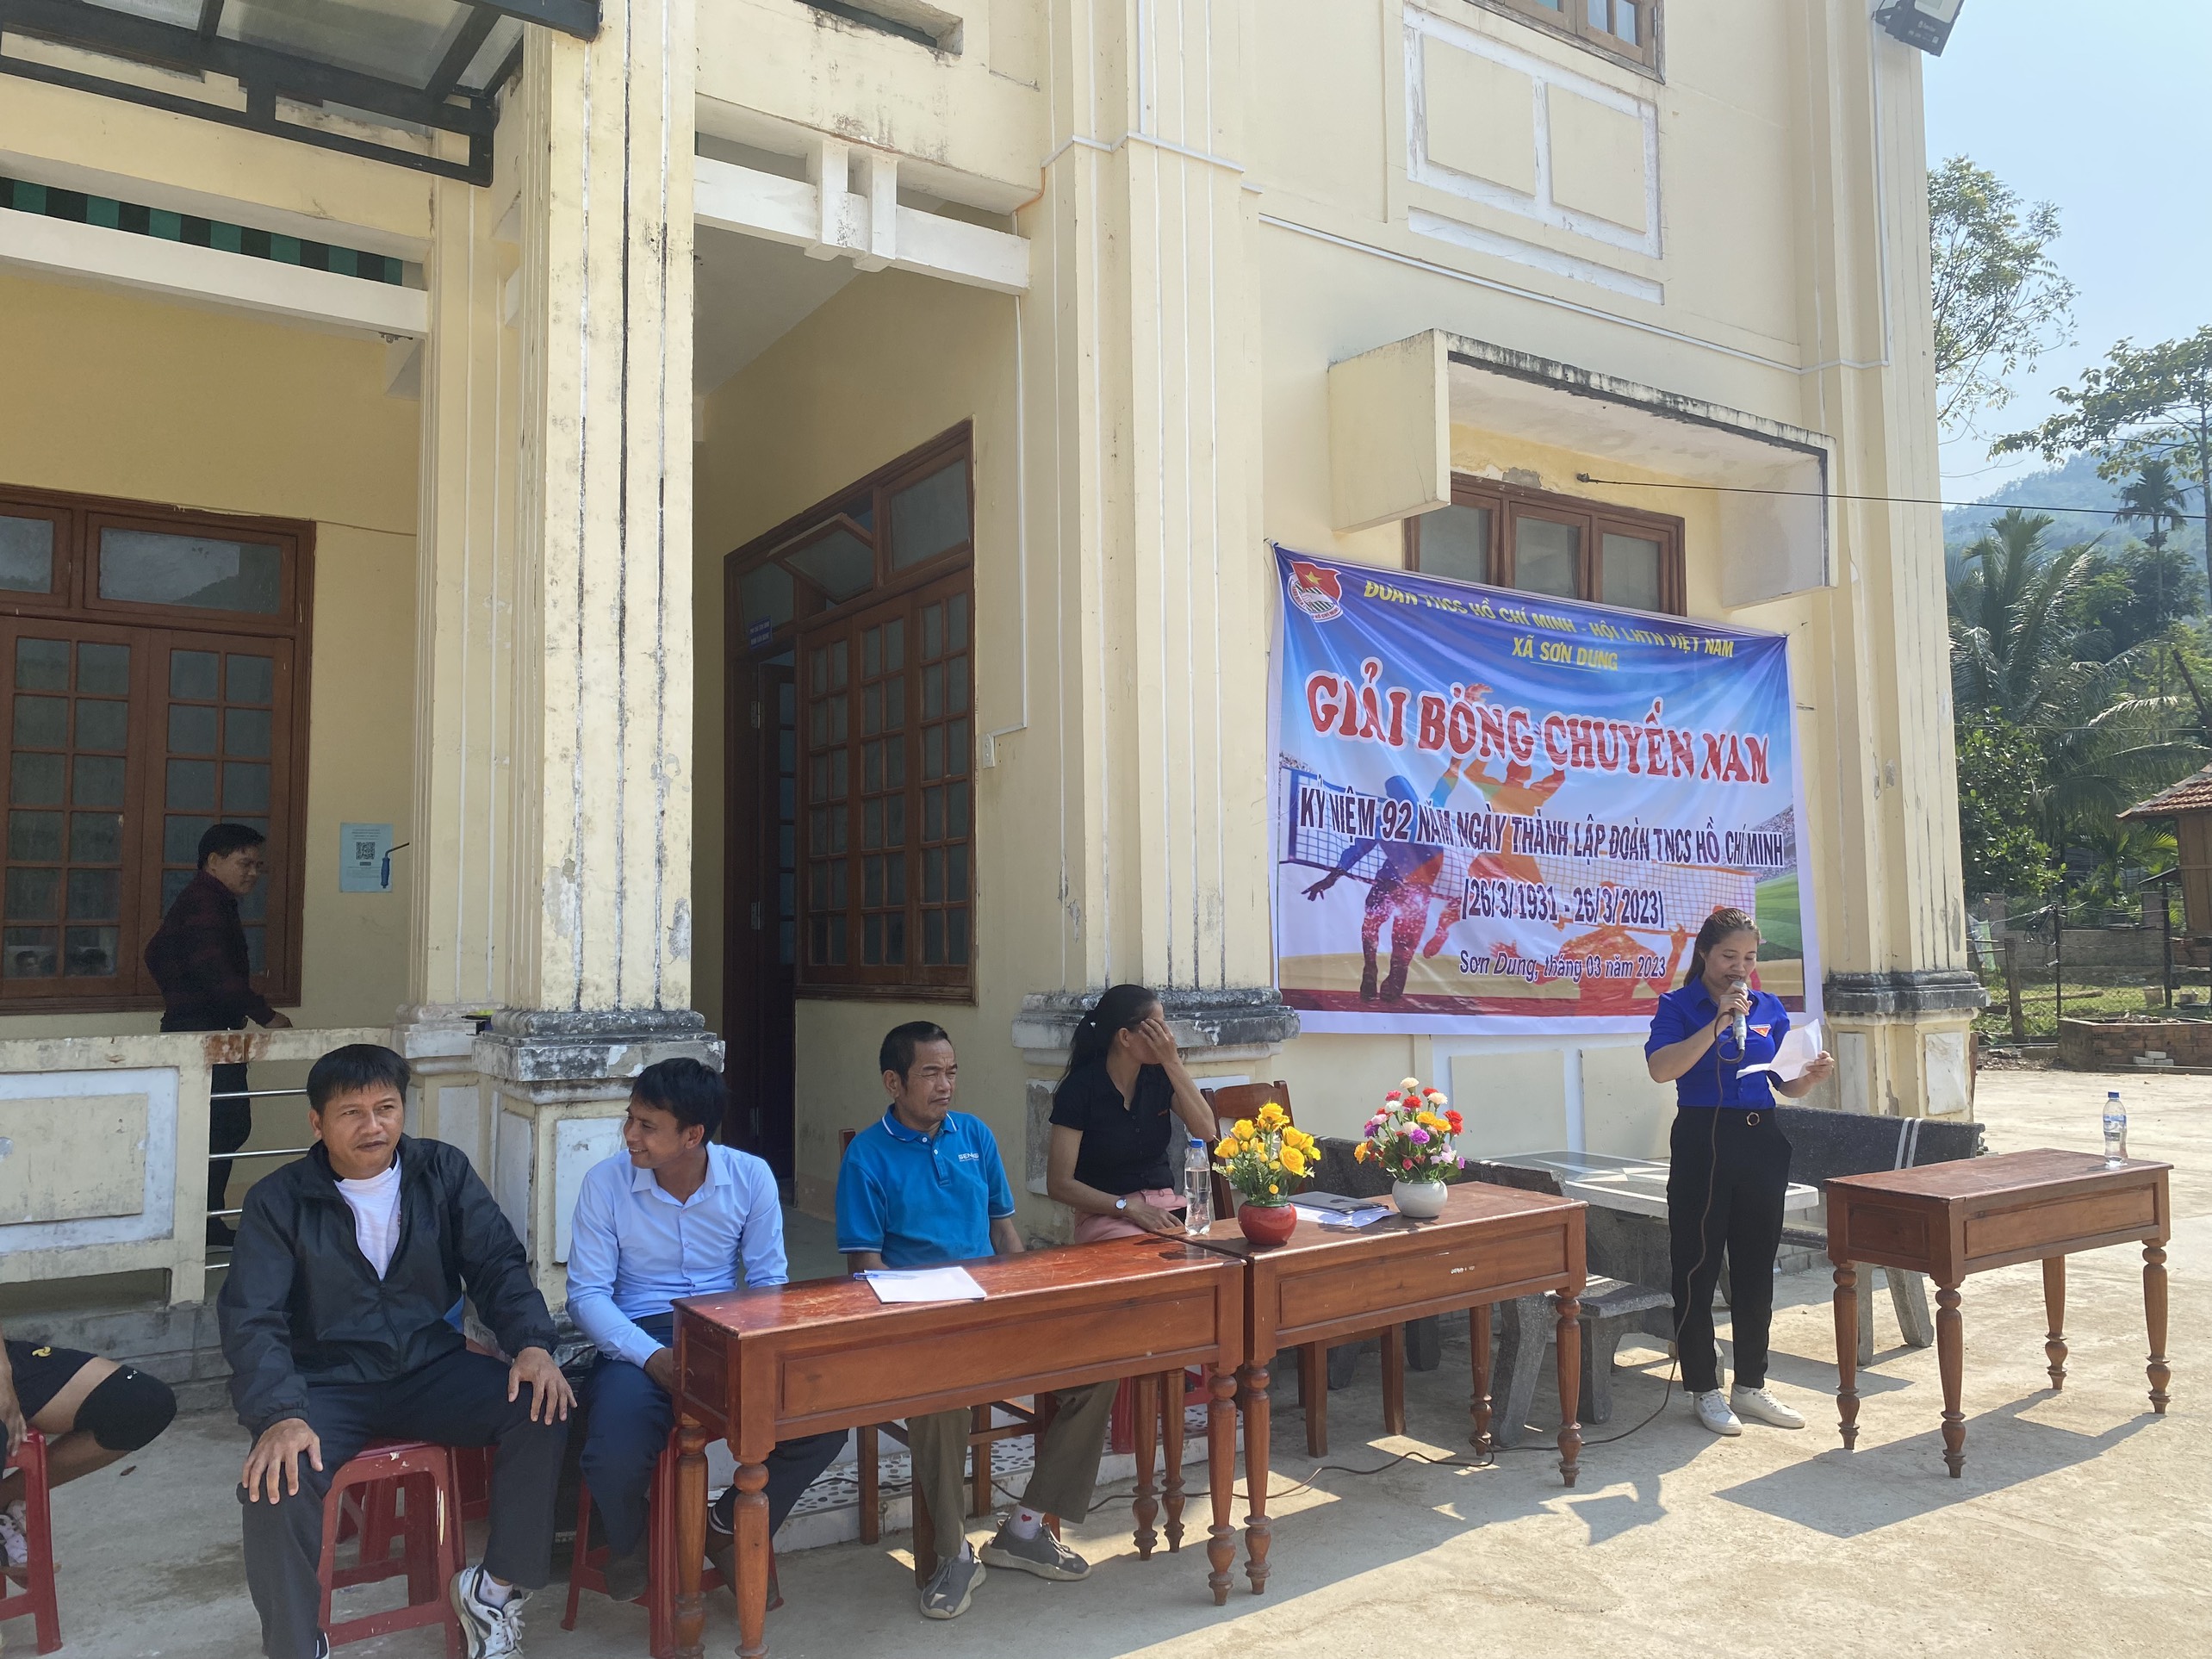 Đoàn thanh niên xã Sơn Dung tổ chức giao lưu bóng chuyền chào mừng kỷ niệm 92 năm thành lập đoàn thanh niên cộng sản Hồ Chí Minh (26/3/1931 - 26/3/2023)